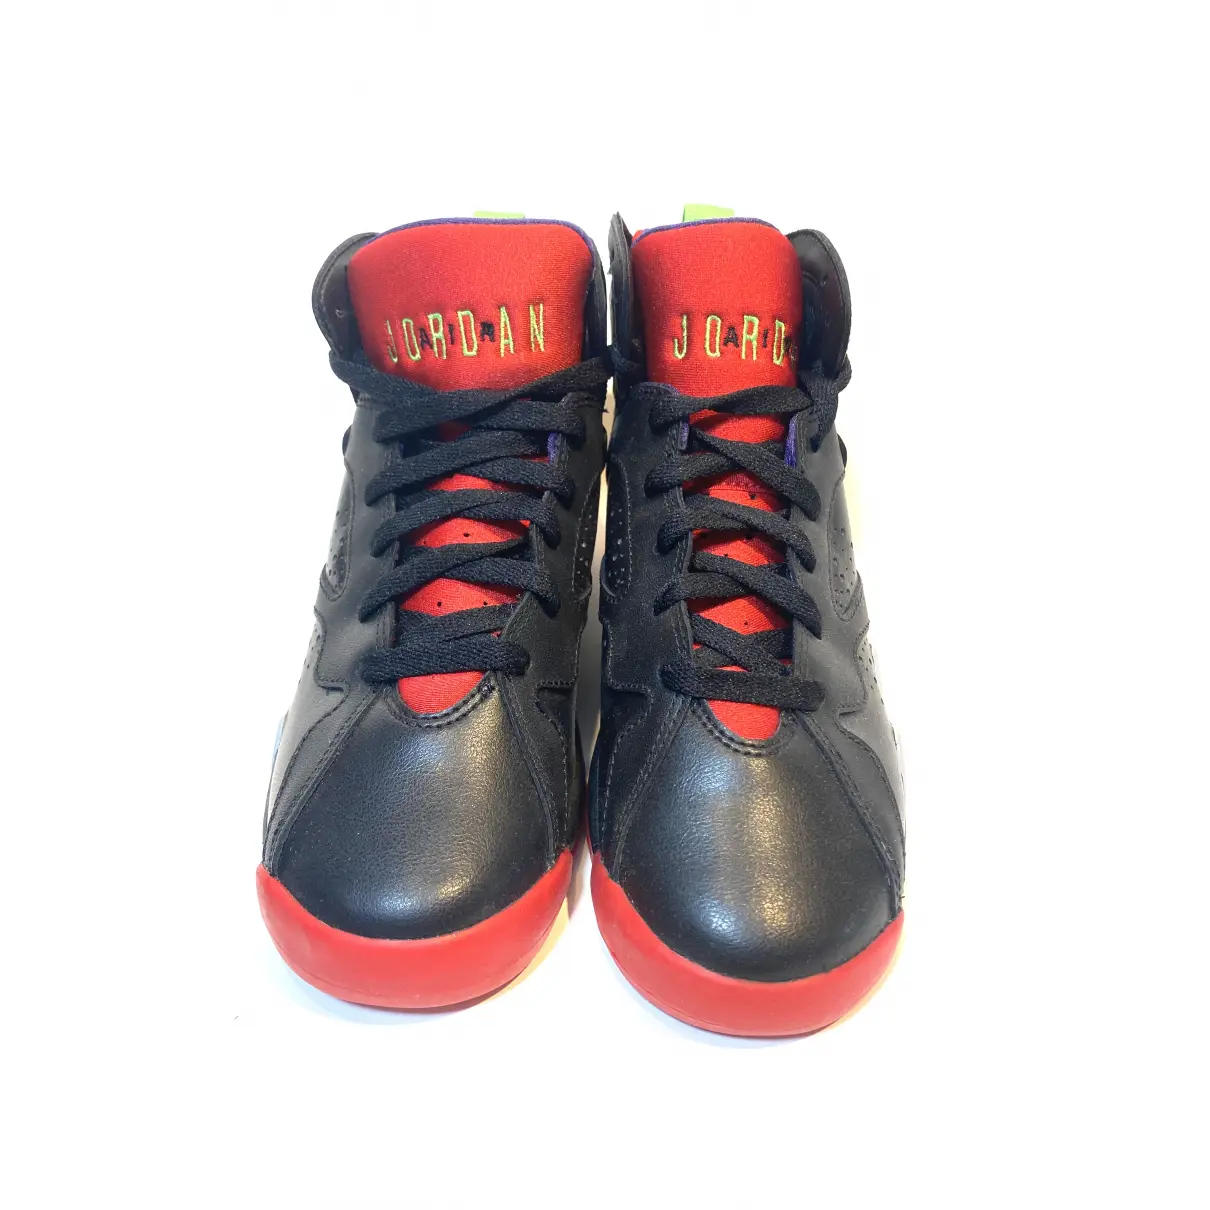 Buy JORDAN Air Jordan 7 leather trainers online